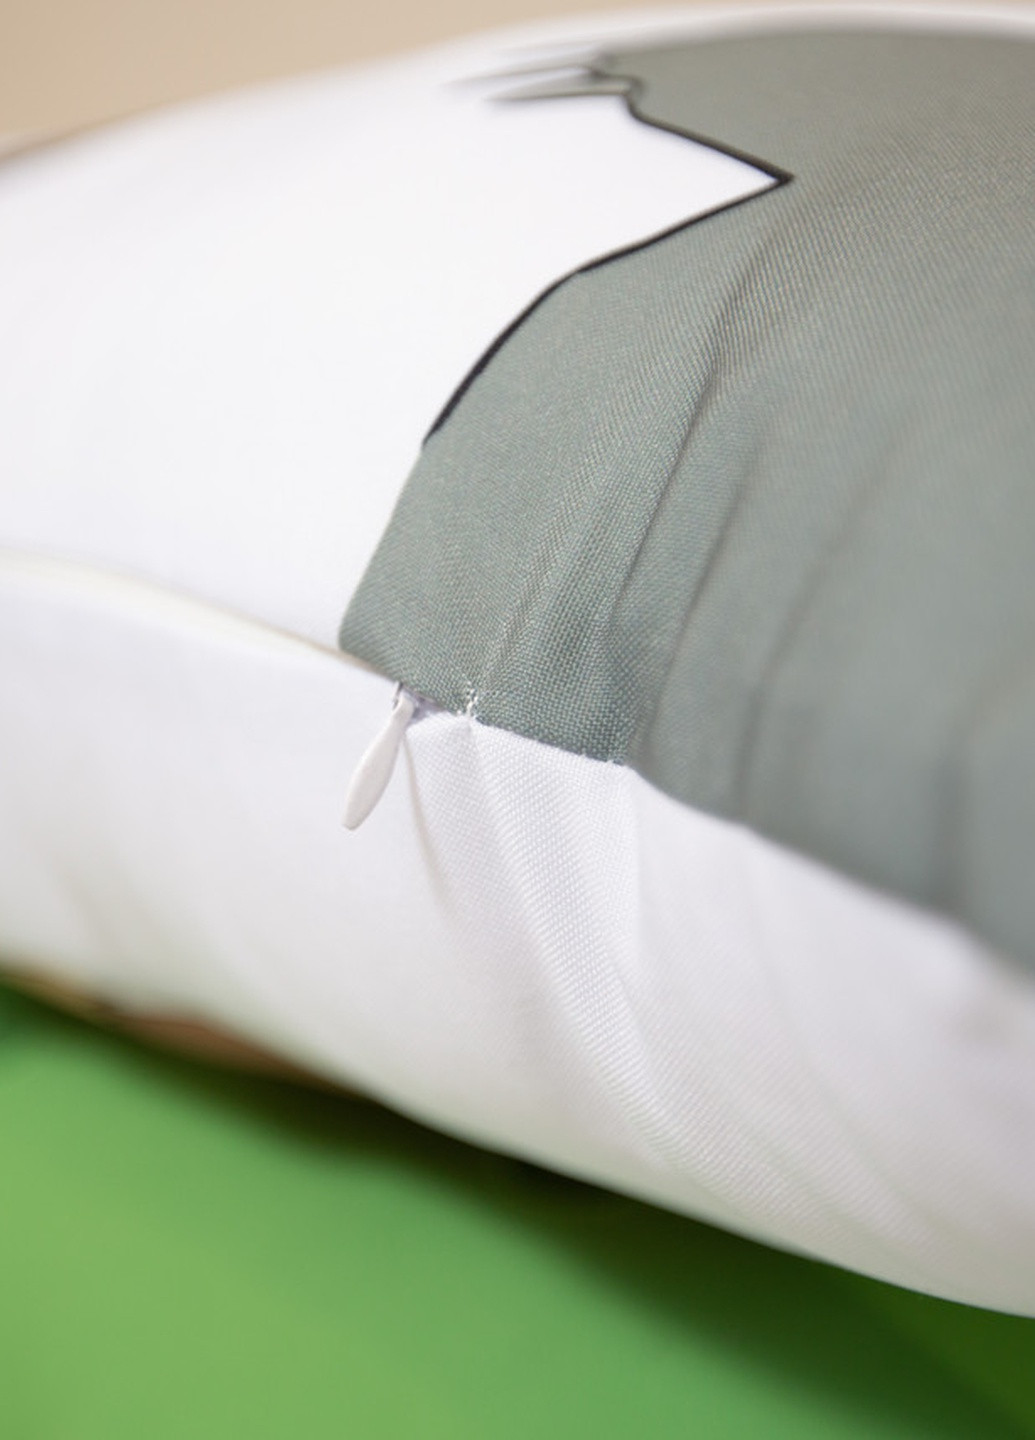 Подушка дакимакура Канна Дракон-горничная госпожи Кобаяши декоративная ростовая подушка для обнимания 60*200 No Brand (258990958)